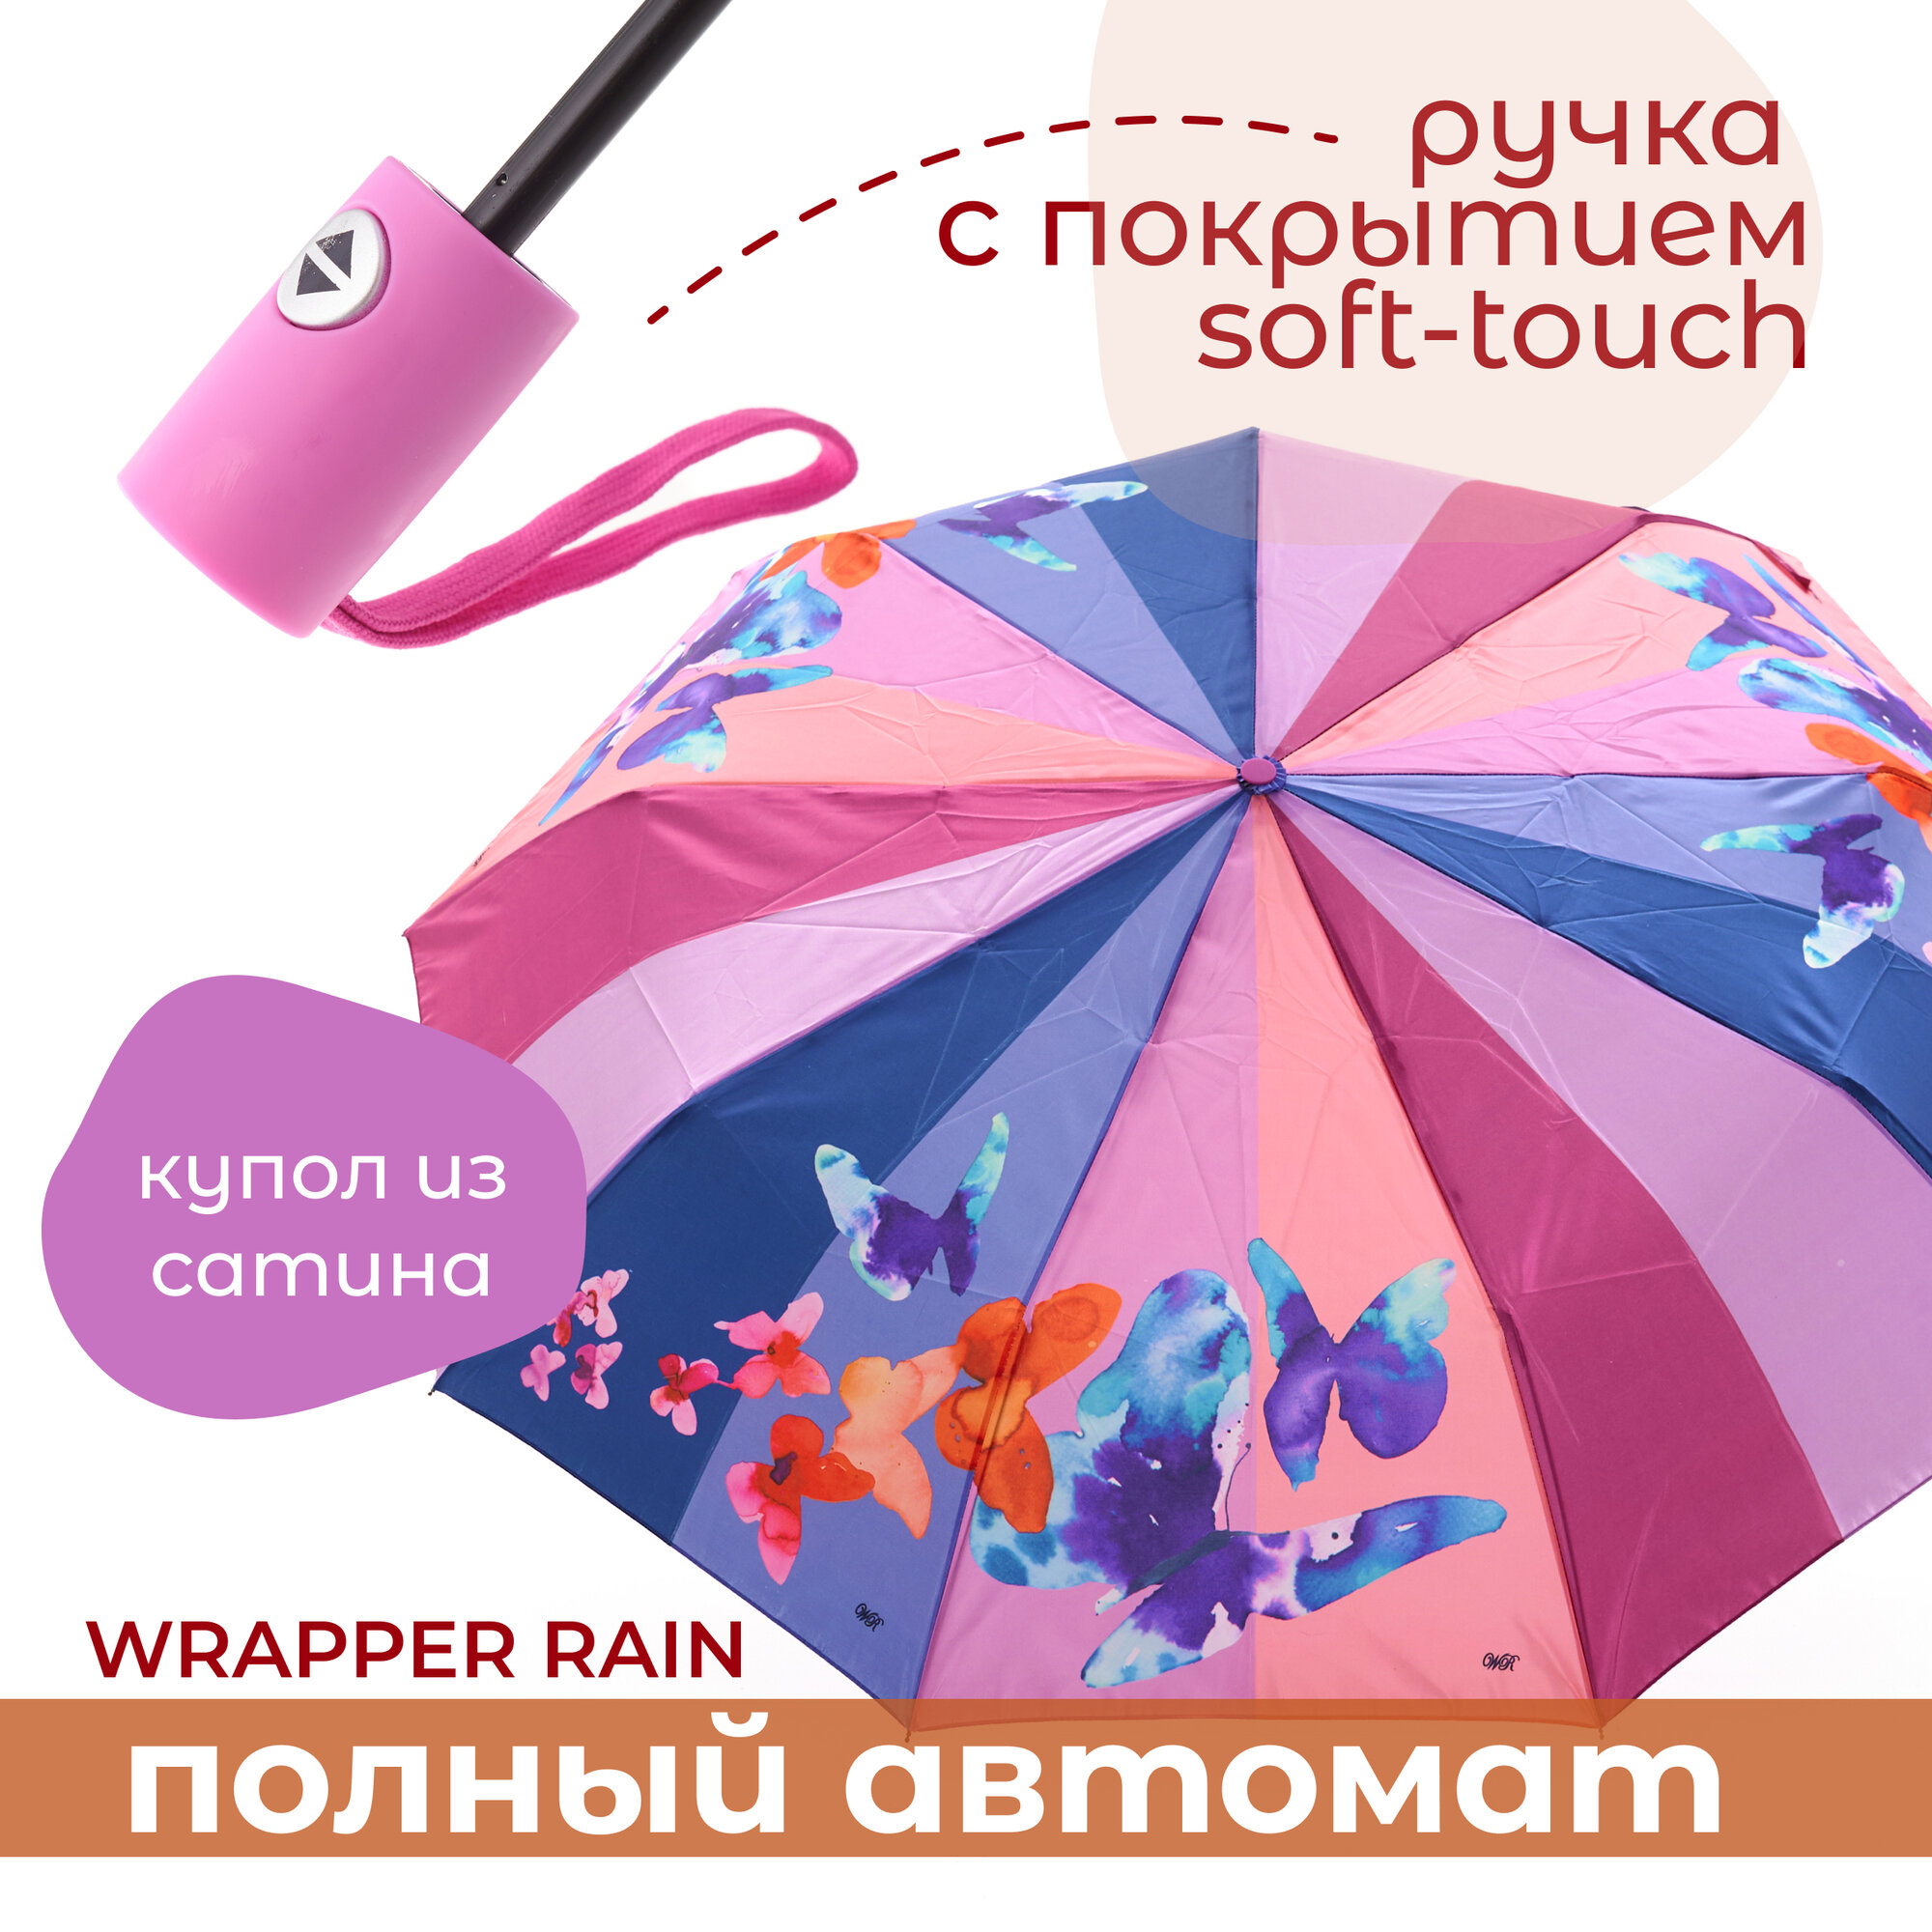 Зонт WRAPPER RAIN, мультиколор